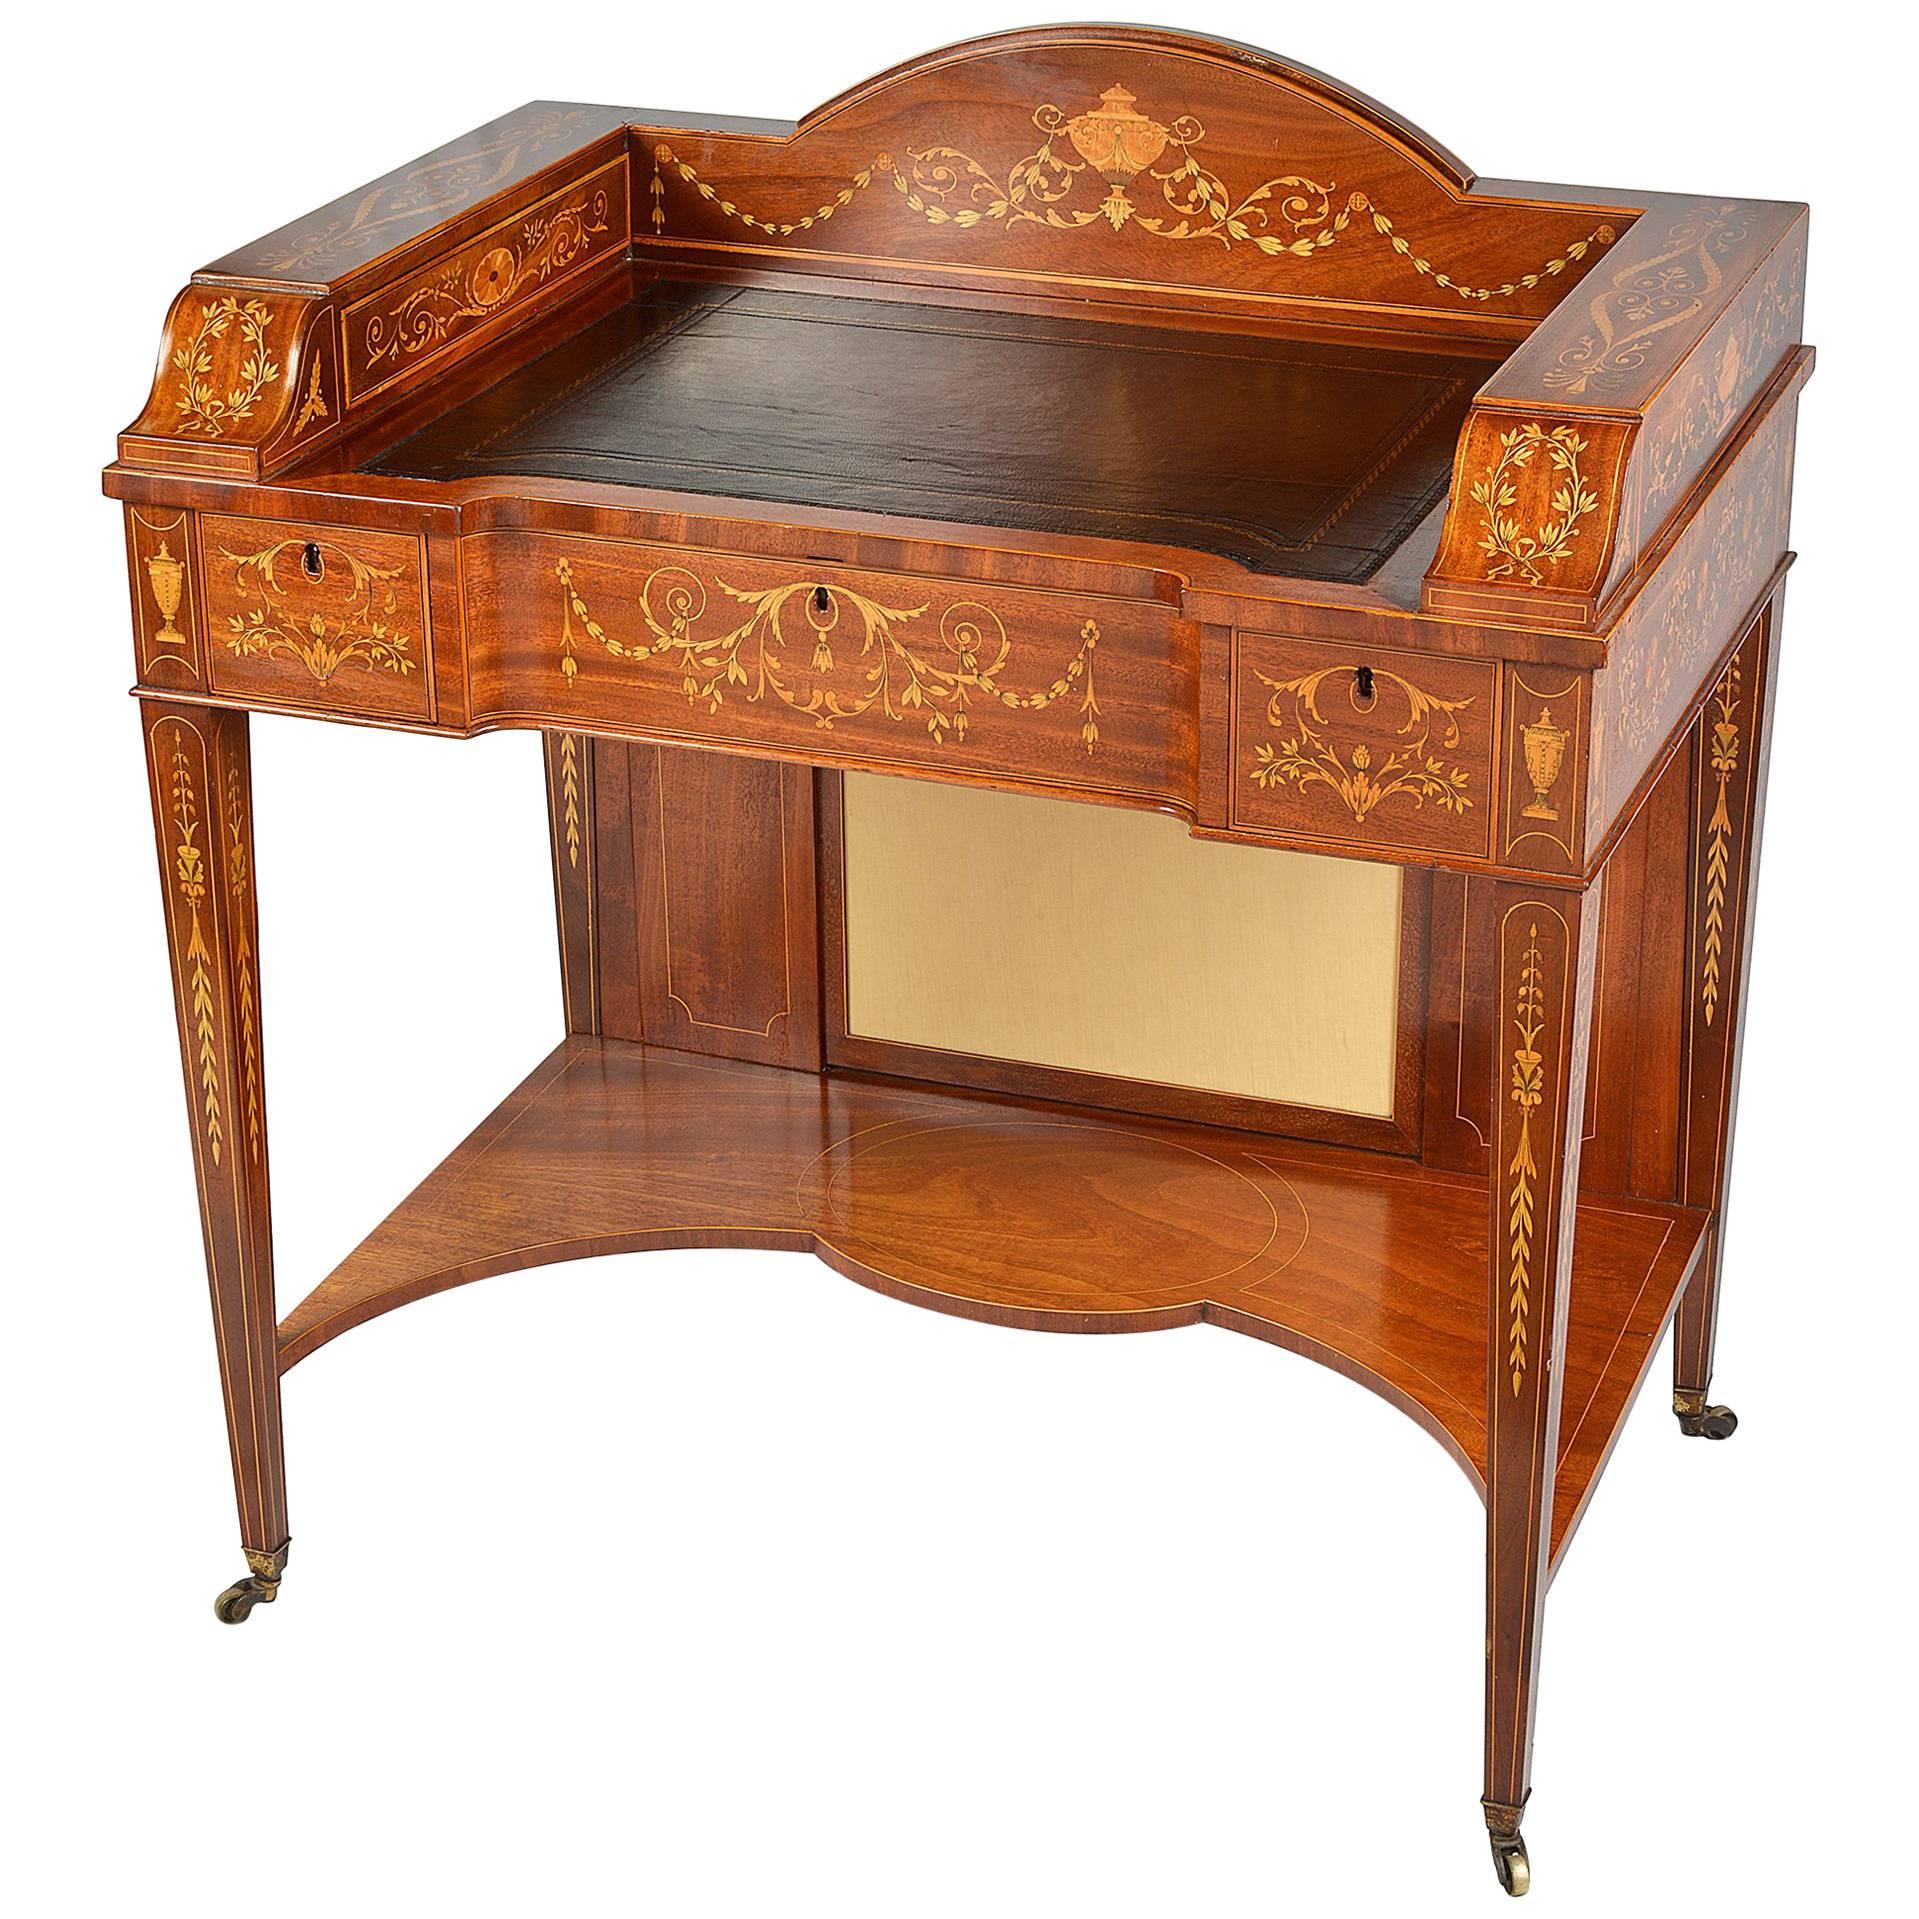 Schreibtisch mit Intarsien aus dem 19. Jahrhundert im Sheraton-Stil